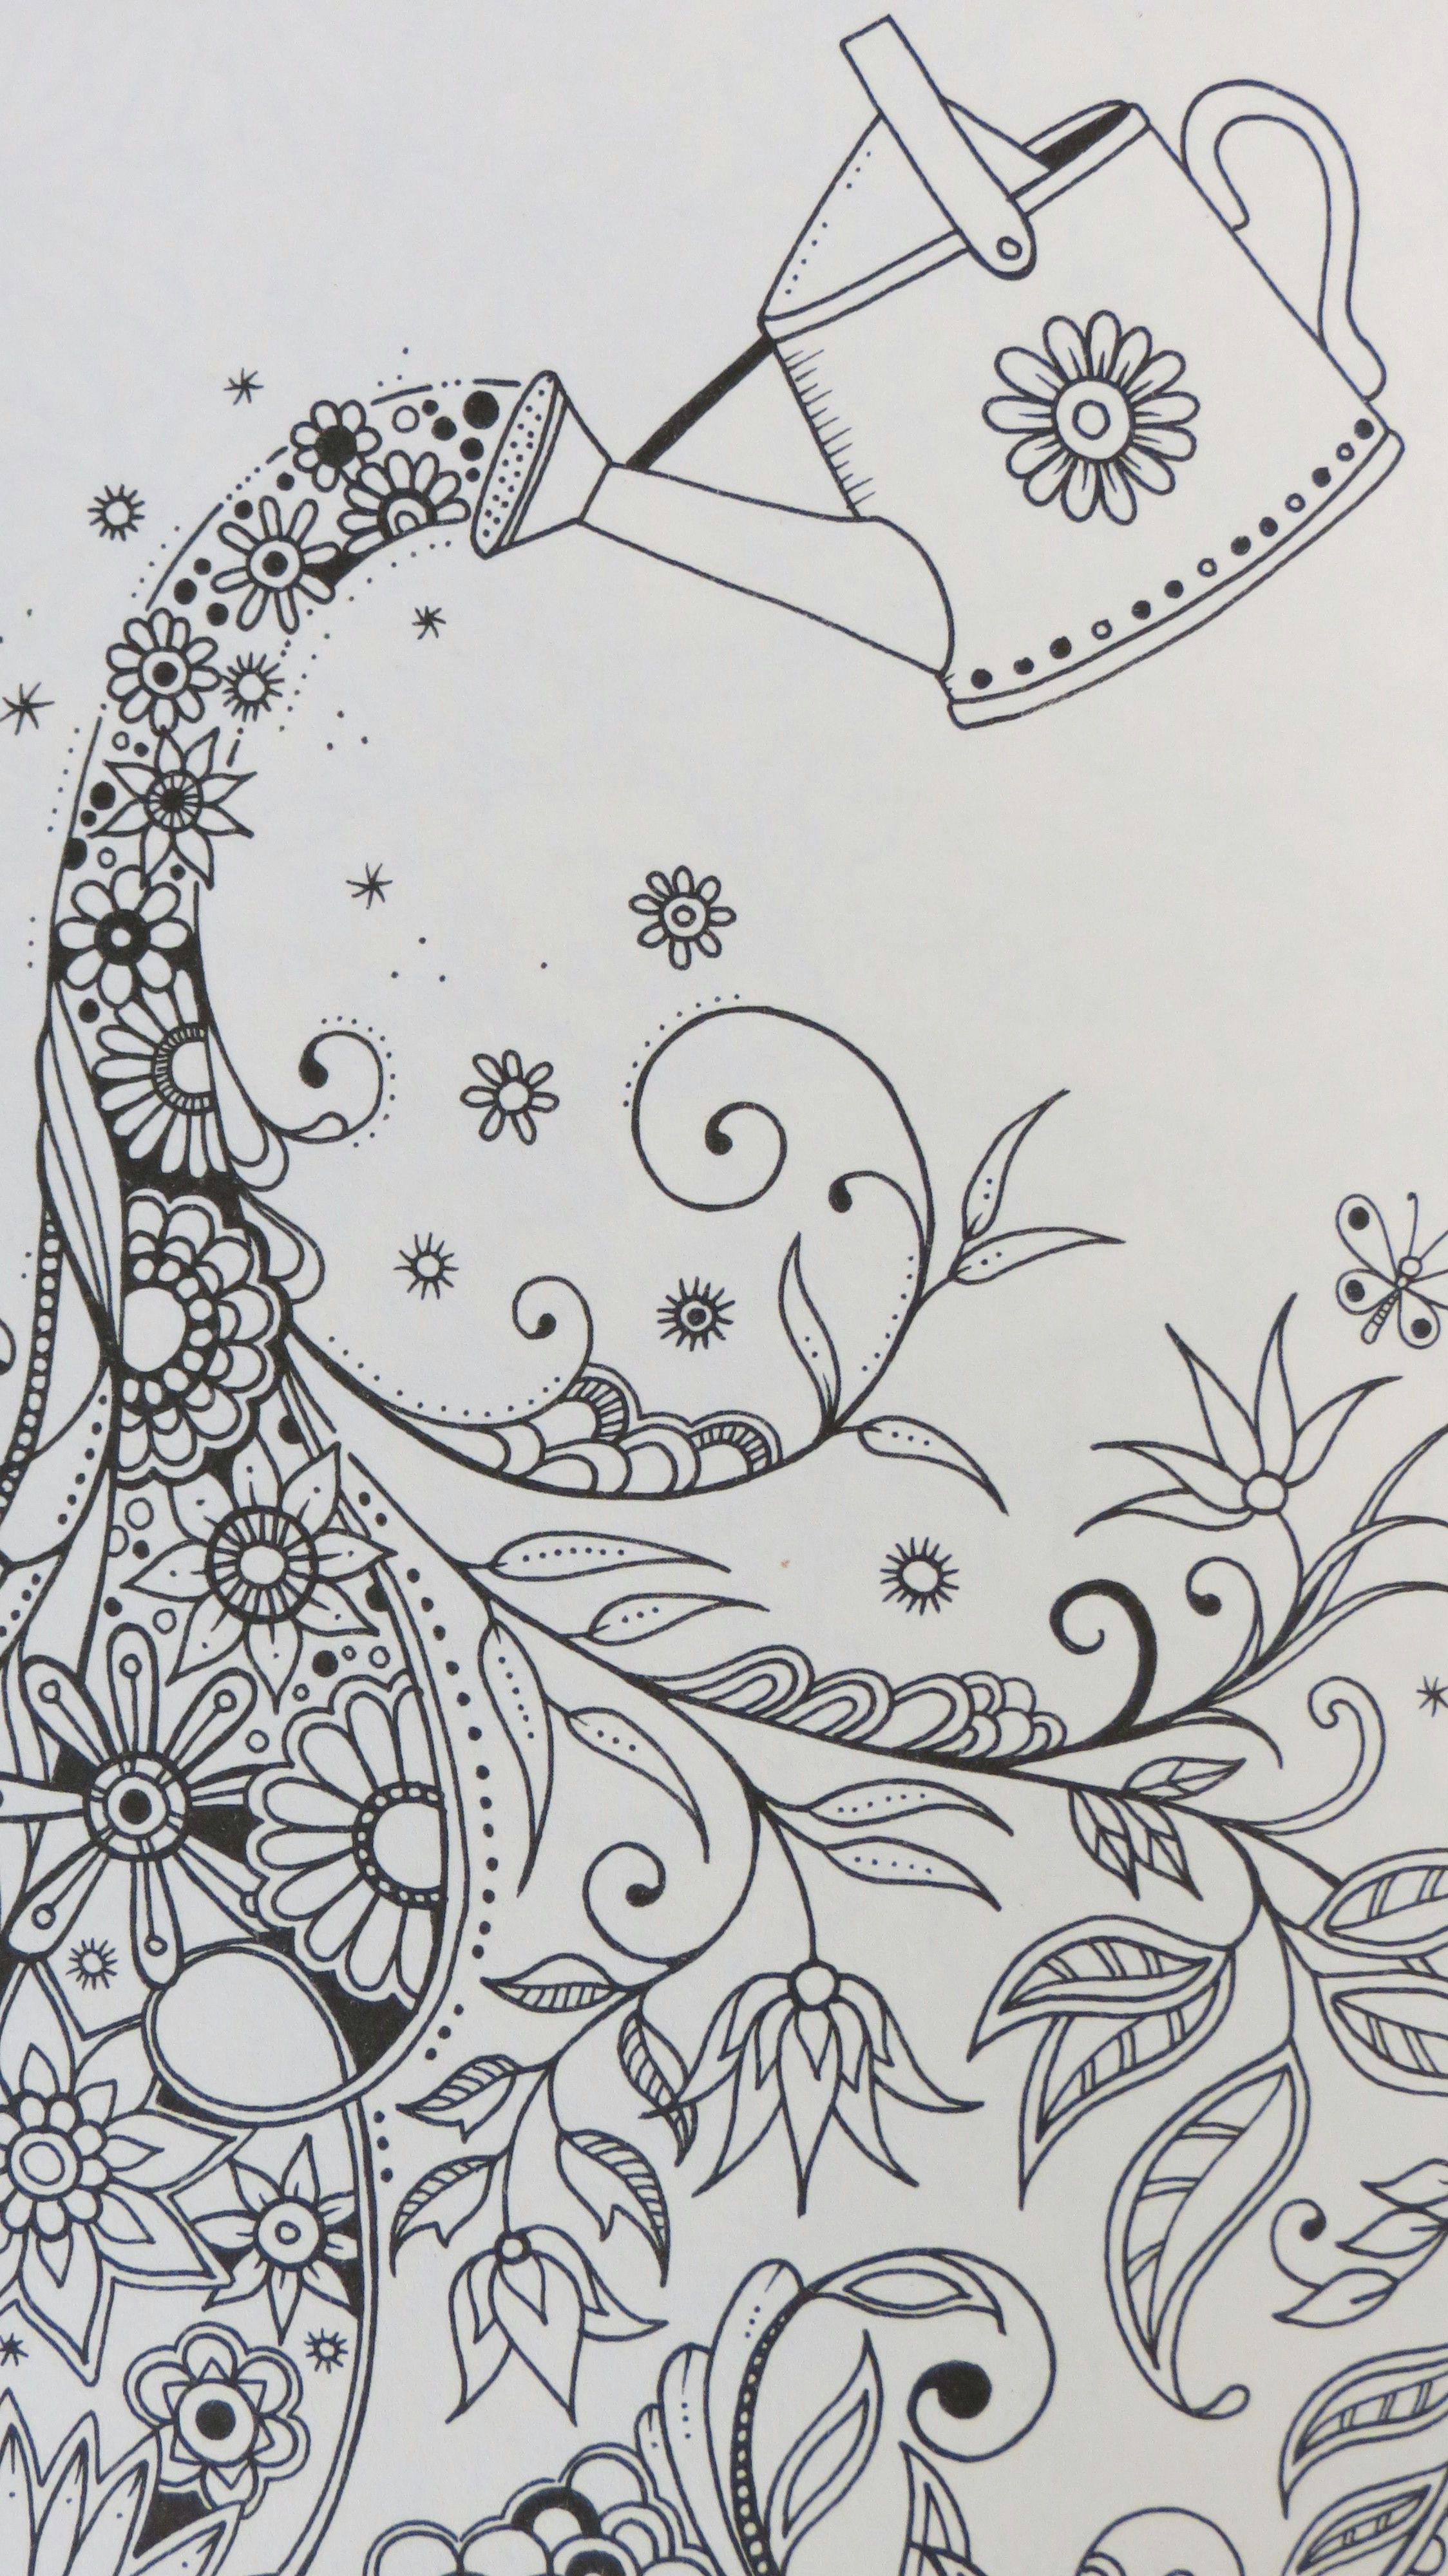 Drawings Of Flower Beds Secret Garden Gardens Doodles and Zentangles